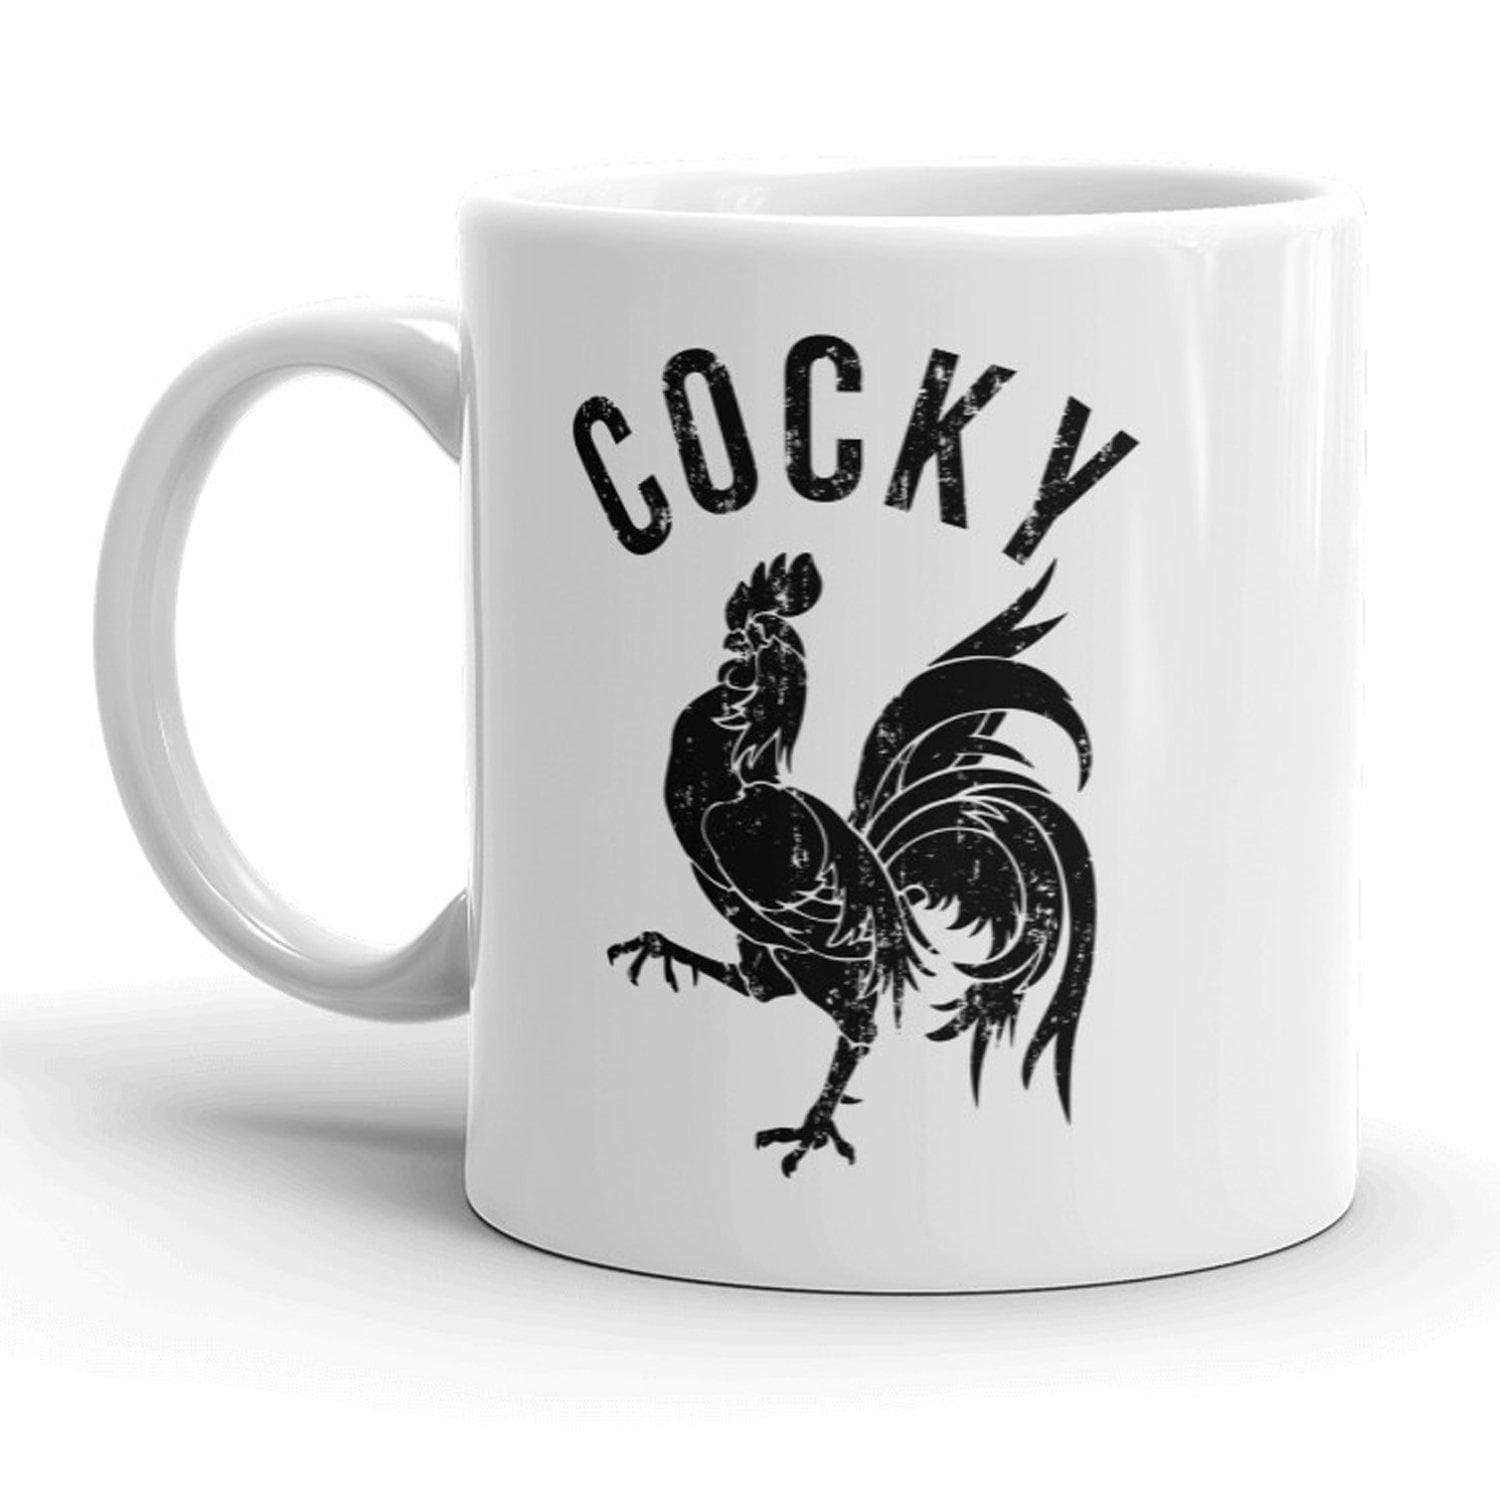 Cocky Mug - Crazy Dog T-Shirts